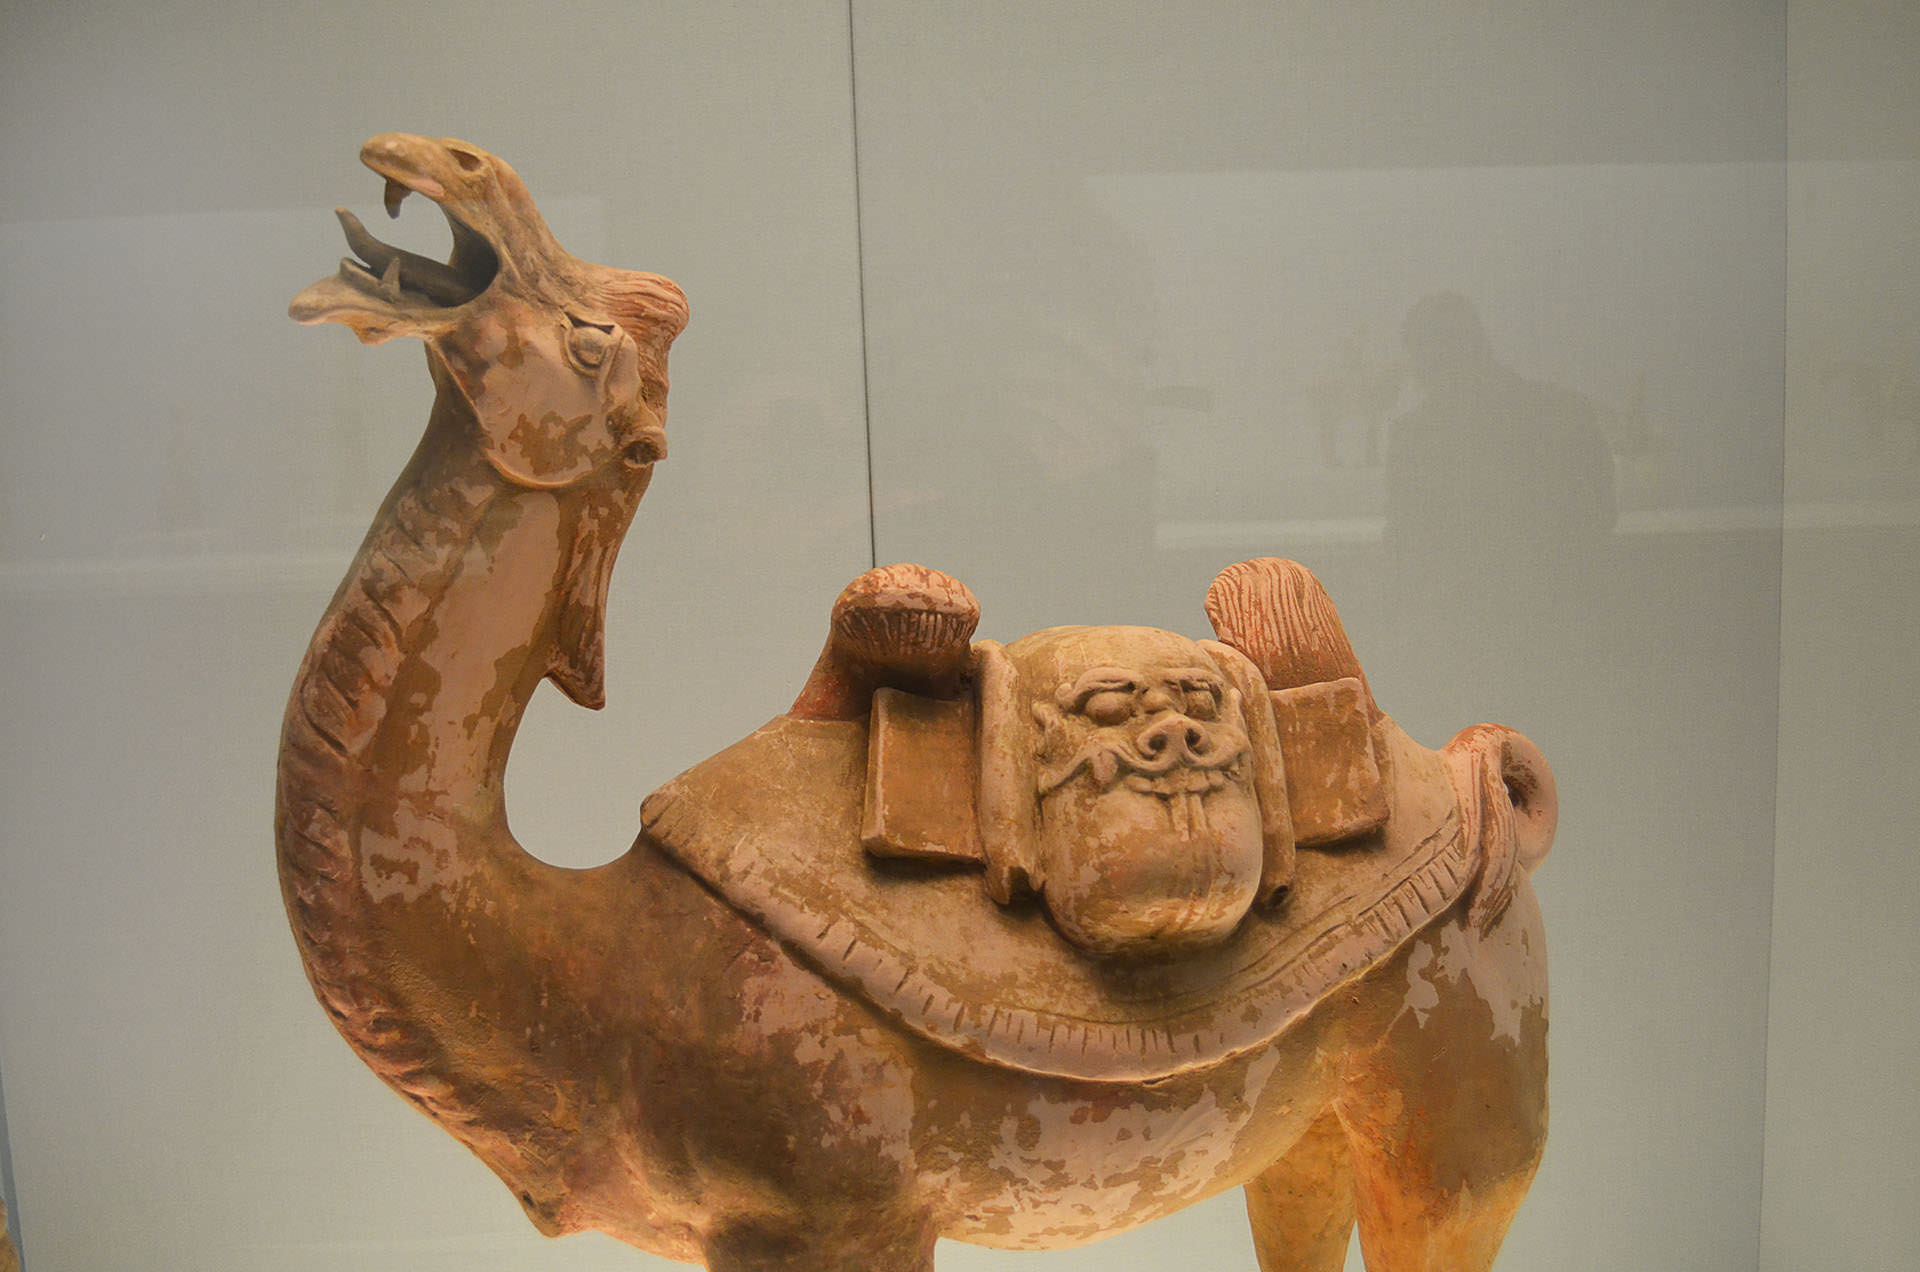 פסלי גמלים מתקופת שושלת טאנג. מעידים על חשיבות הסוחרים הזרים בתקופה (צילום: נוגה פיגה)